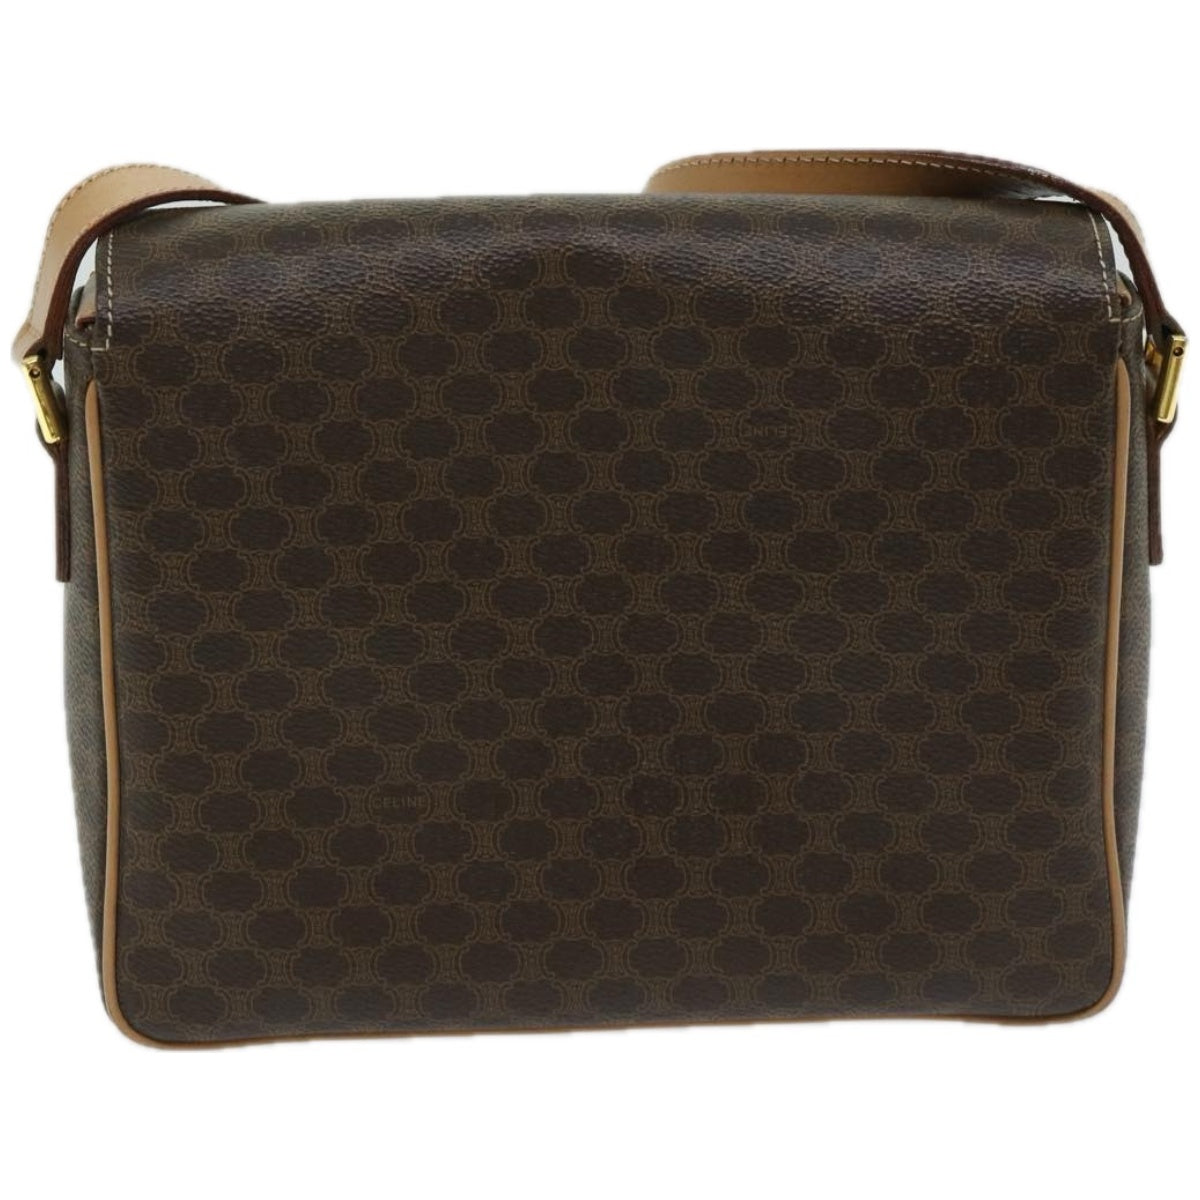 CELINE Macadam Canvas Shoulder Bag PVC Leather Brown Auth 67580